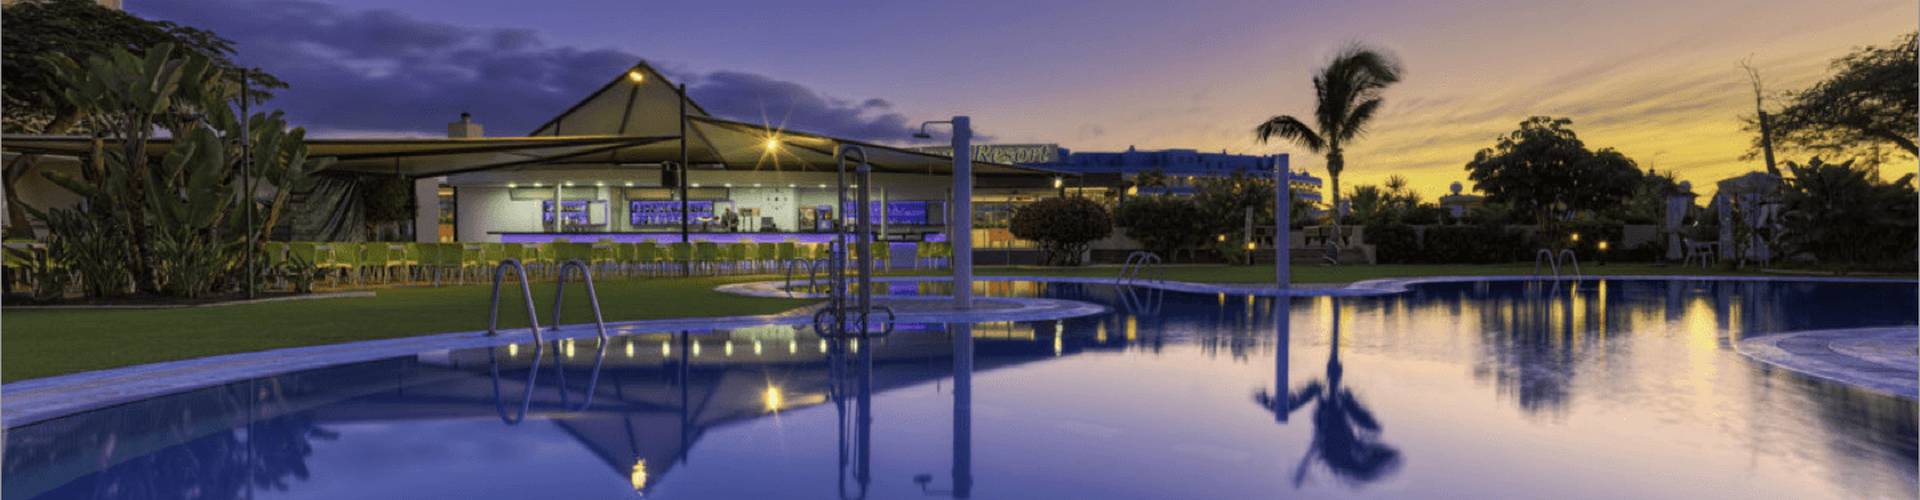 Hotel Parque la Paz - Playa de las Américas - 